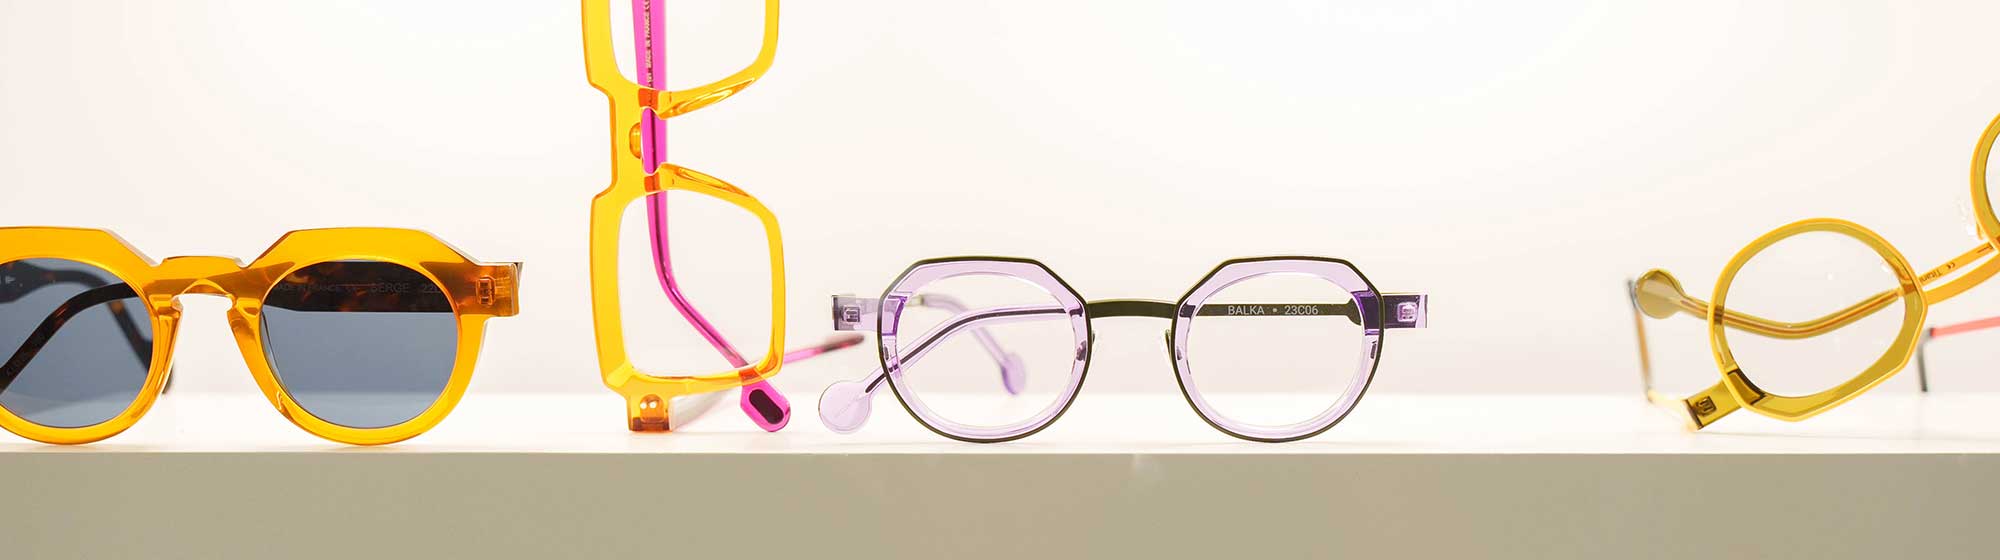 Exposition de lunettes jaunes et violettes